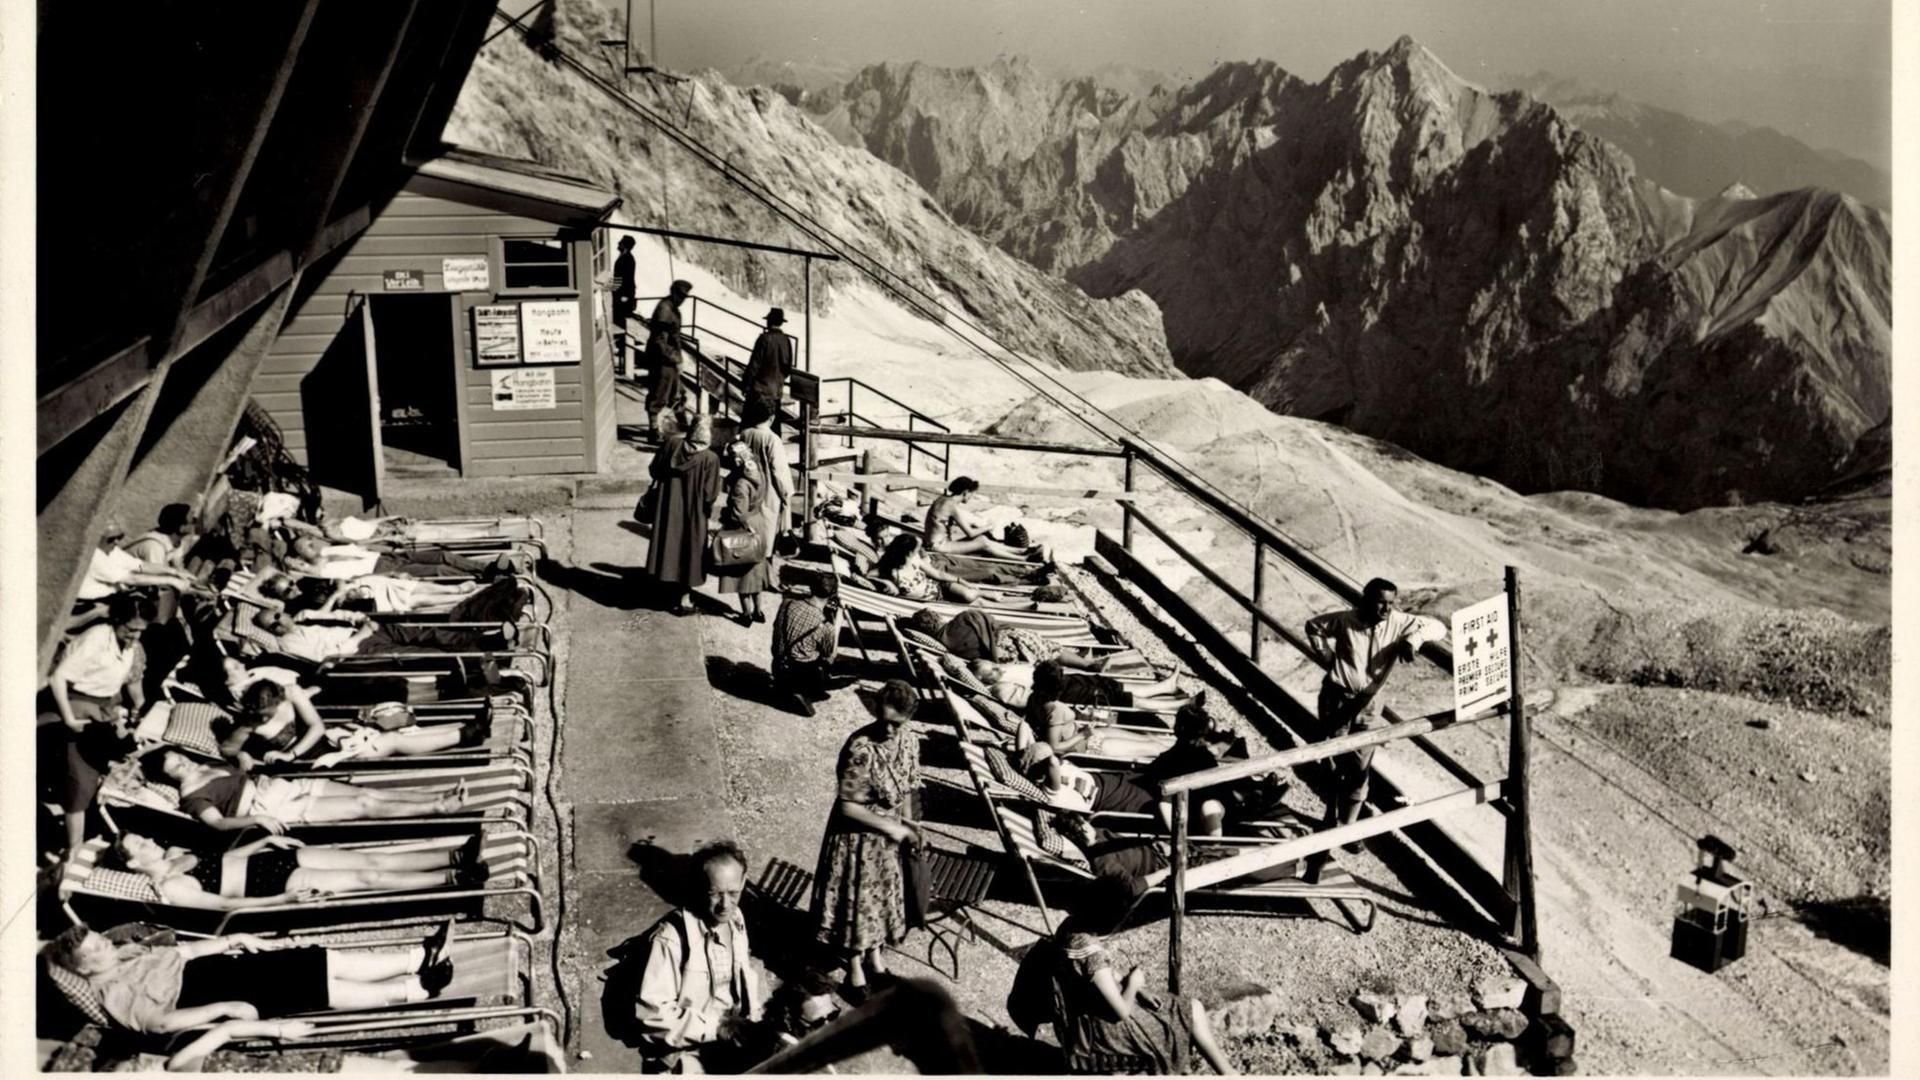 Ein Schwarzweiß-Foto zeigt etwa ein Dutzend Menschen in Liegestühlen sonnend auf einer mit Geländern eingefassten Terrasse. Im Hintergrund ein gewaltiges Alpen-Panorama